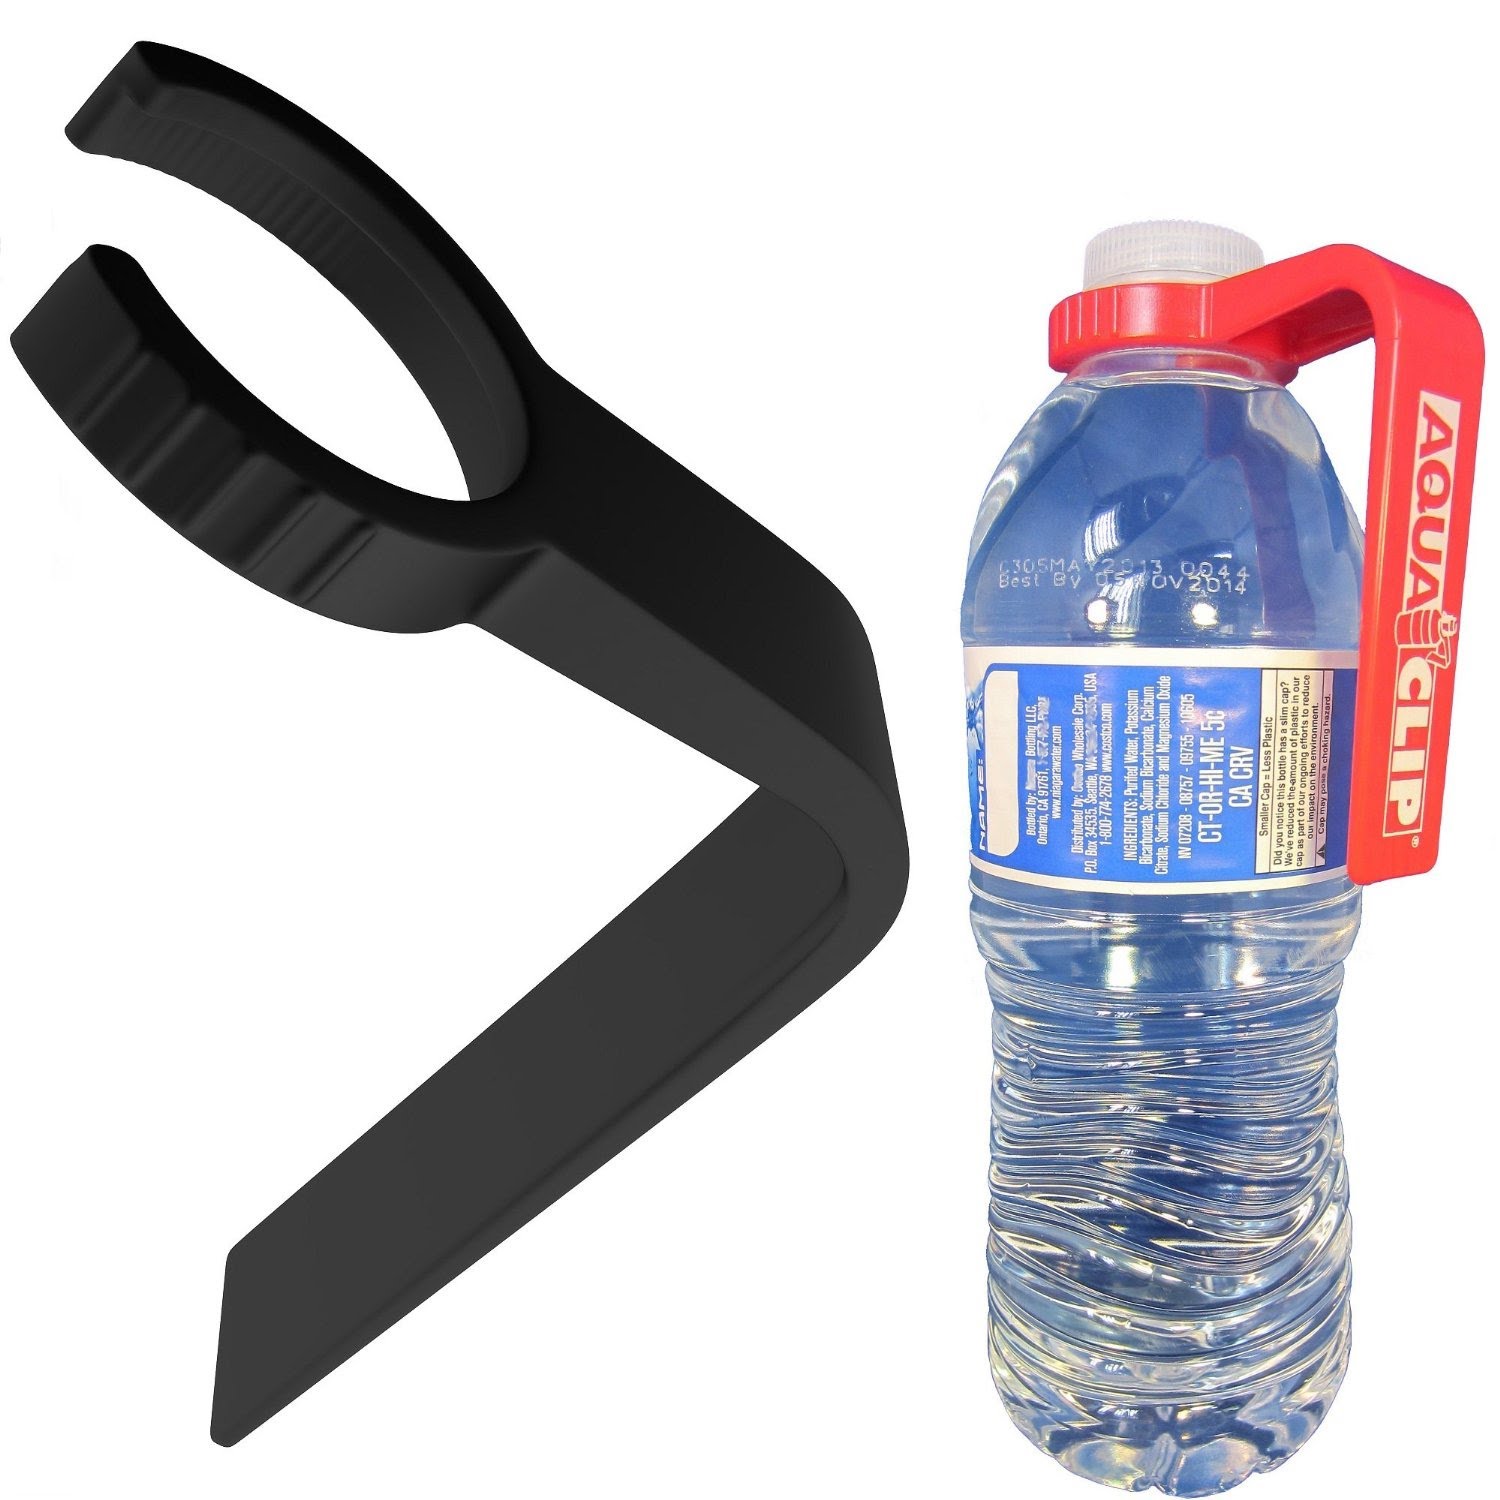 Water Bottle Belt Clip